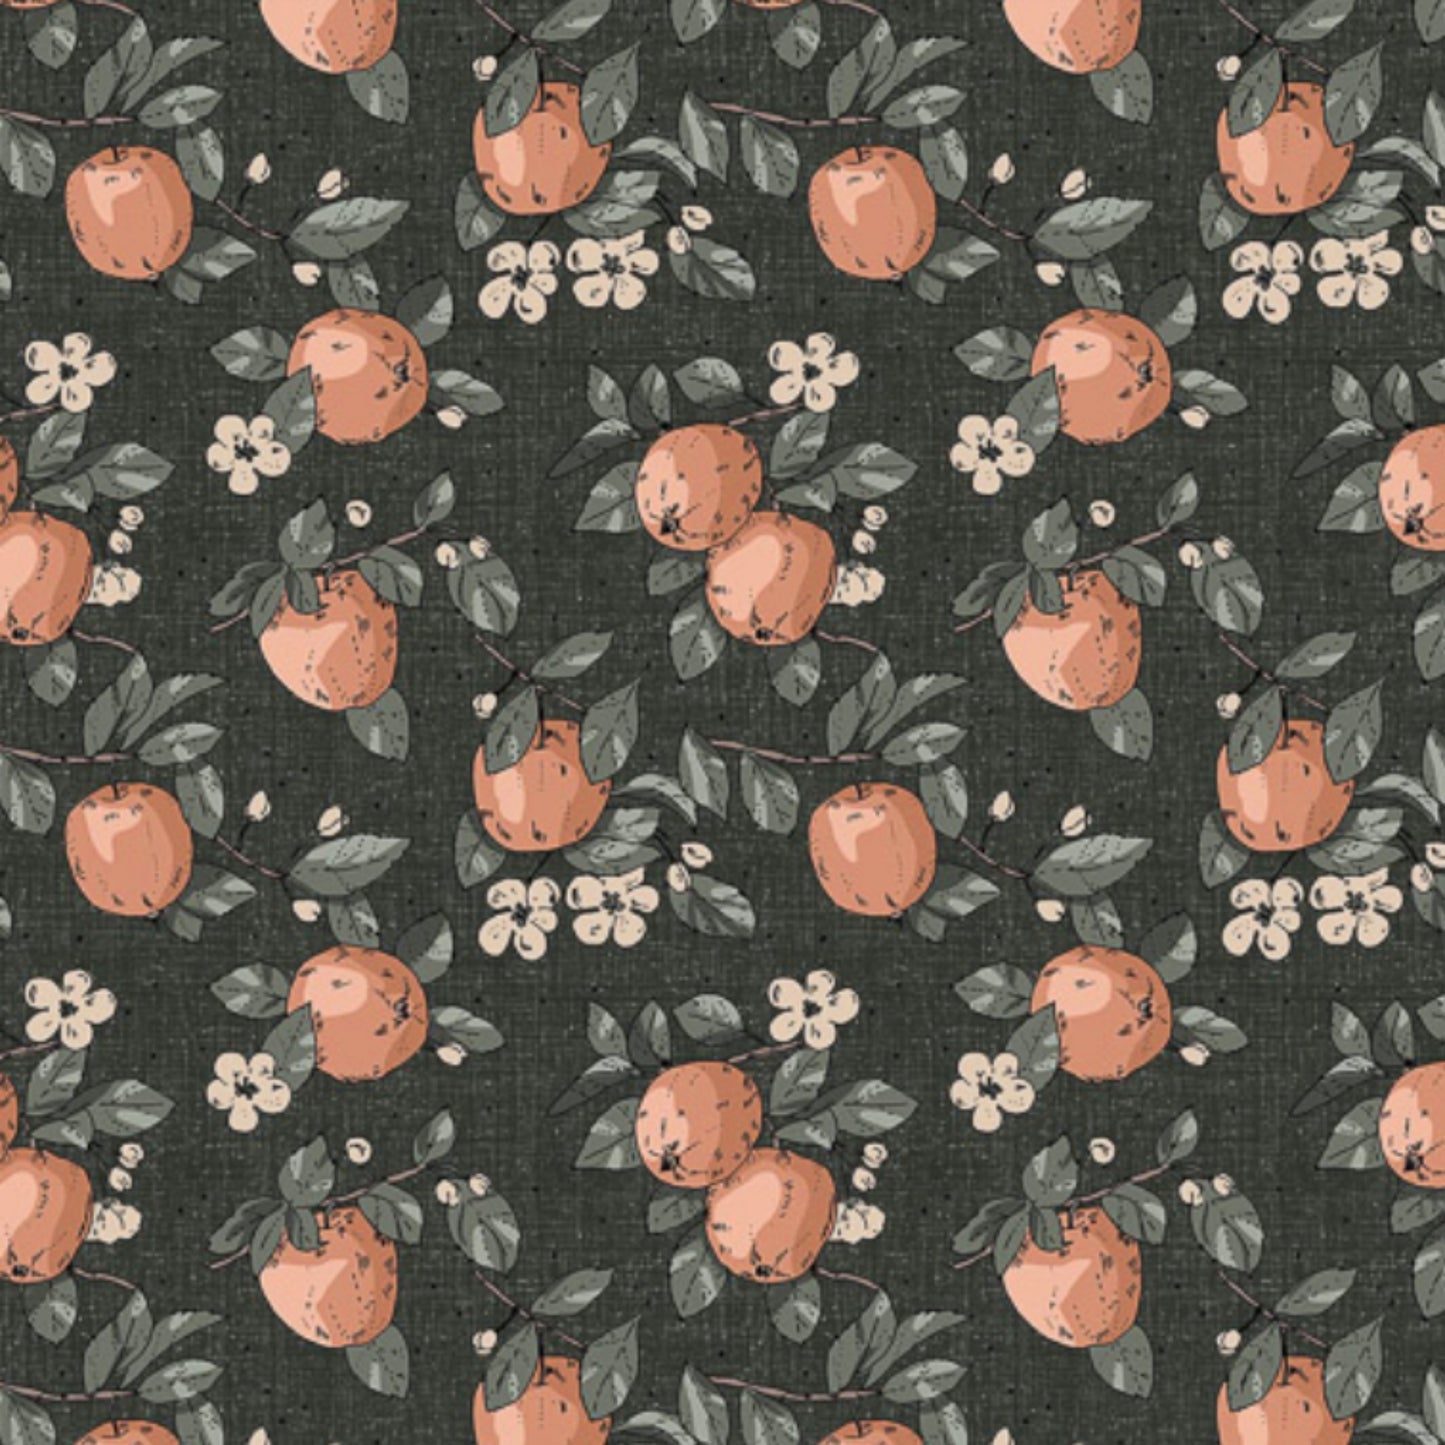 Apples in Spruce - Klara Collection by Bernaett Urbanovics for Figo Fabrics